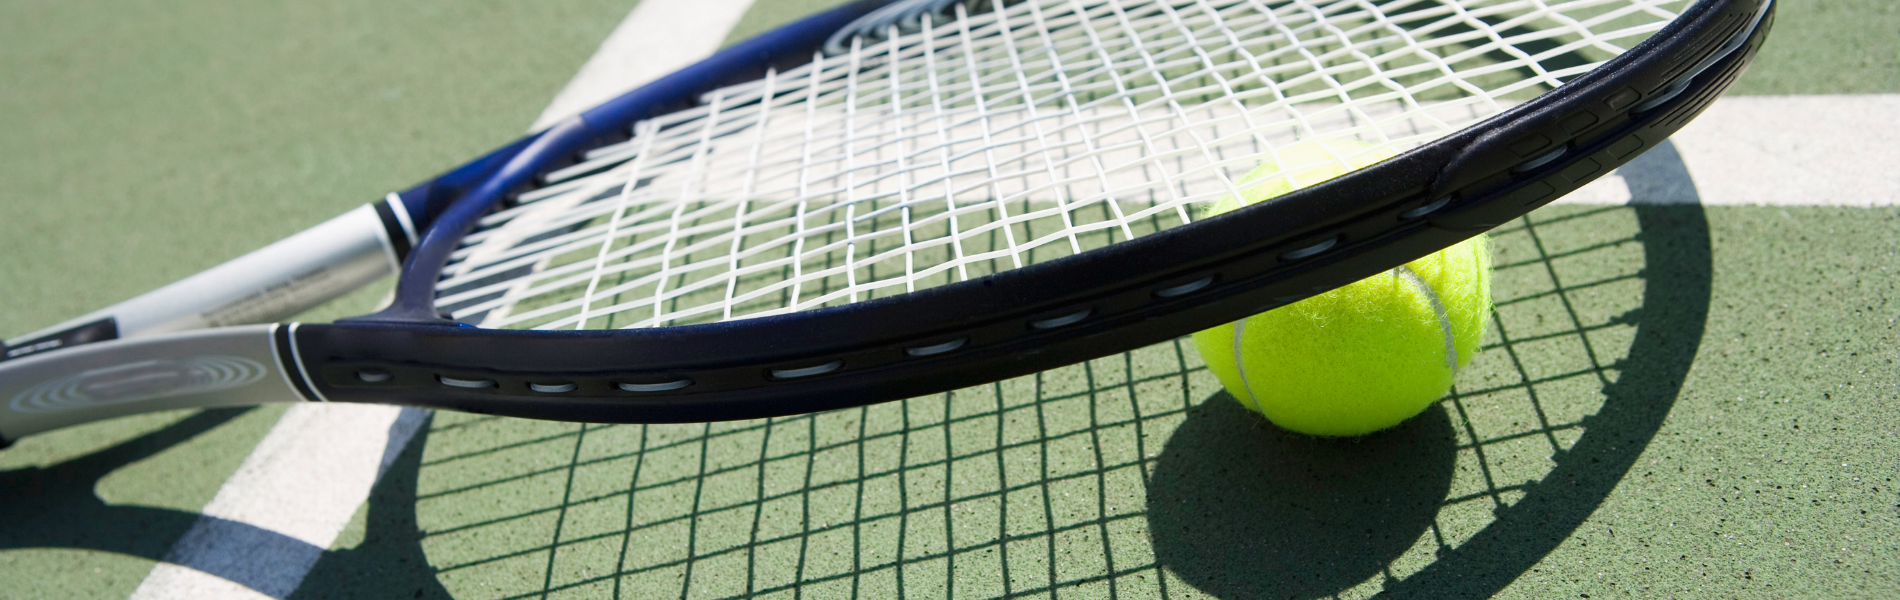 La Asociación de Tenis Femenino pone los datos en el centro de la cancha